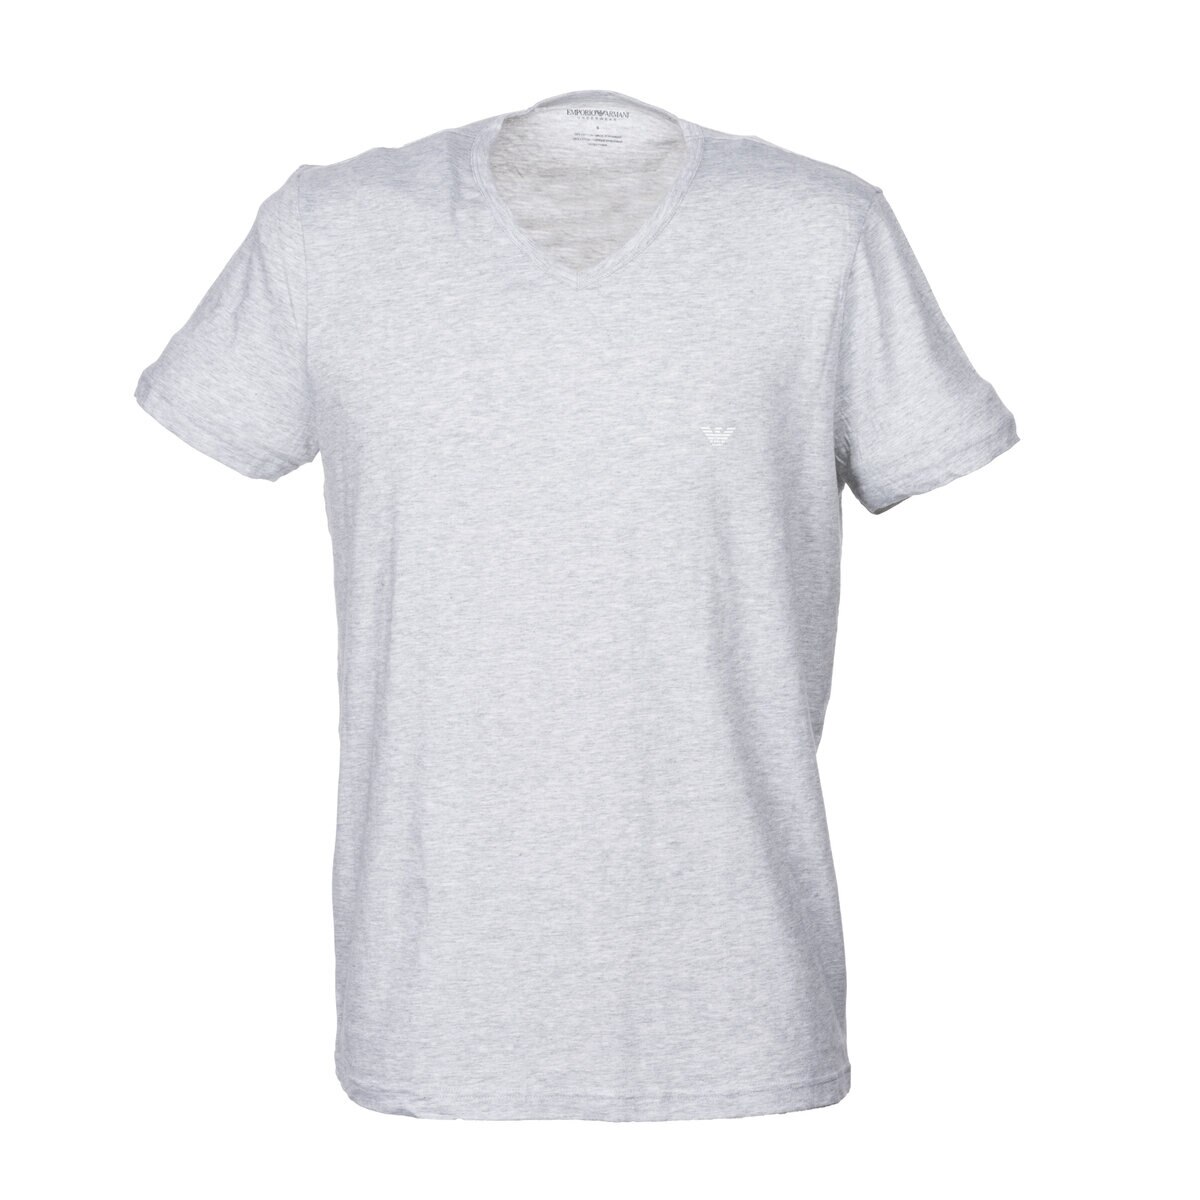 エンポリオアルマーニ メンズ Vネック 半袖Tシャツ 3枚組